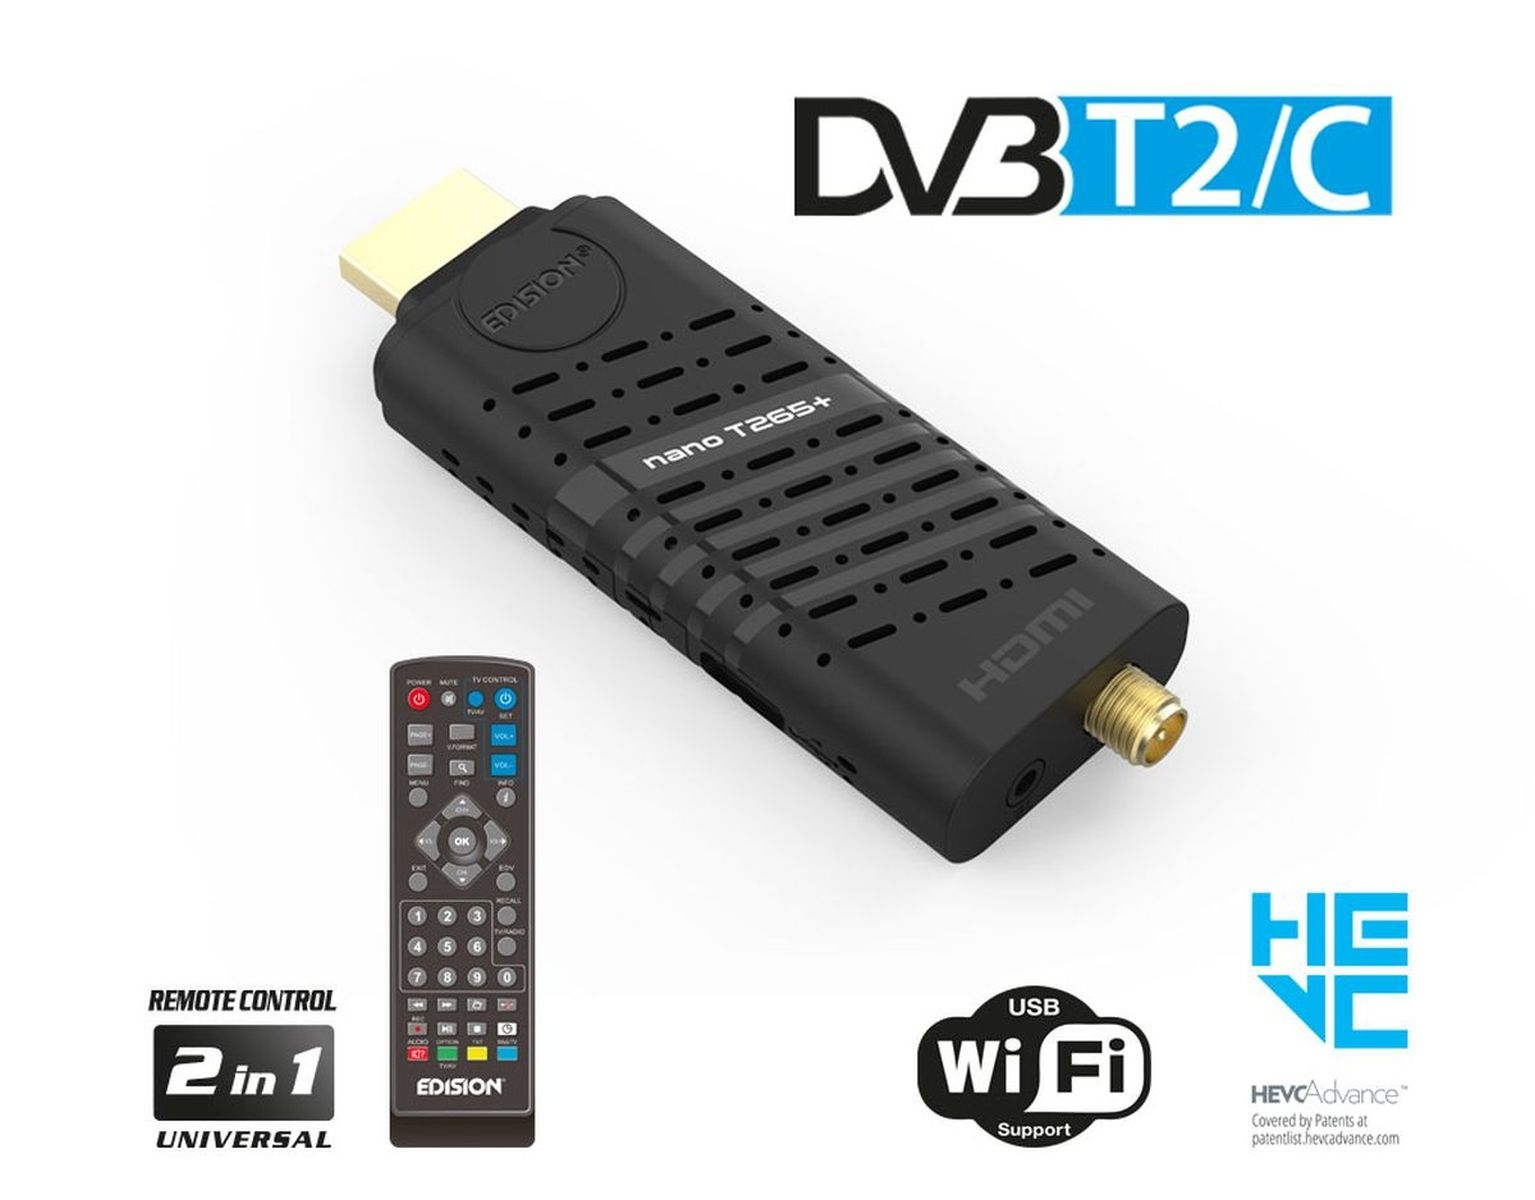 EDISION Nano T265+ für terrestrisch PVR-Funktion=optional, Twin DVB-T2 DVB-C, schwarz) und Kabel Tuner, Kabel-Receiver (H.264), DVB-T, (HDTV, HD